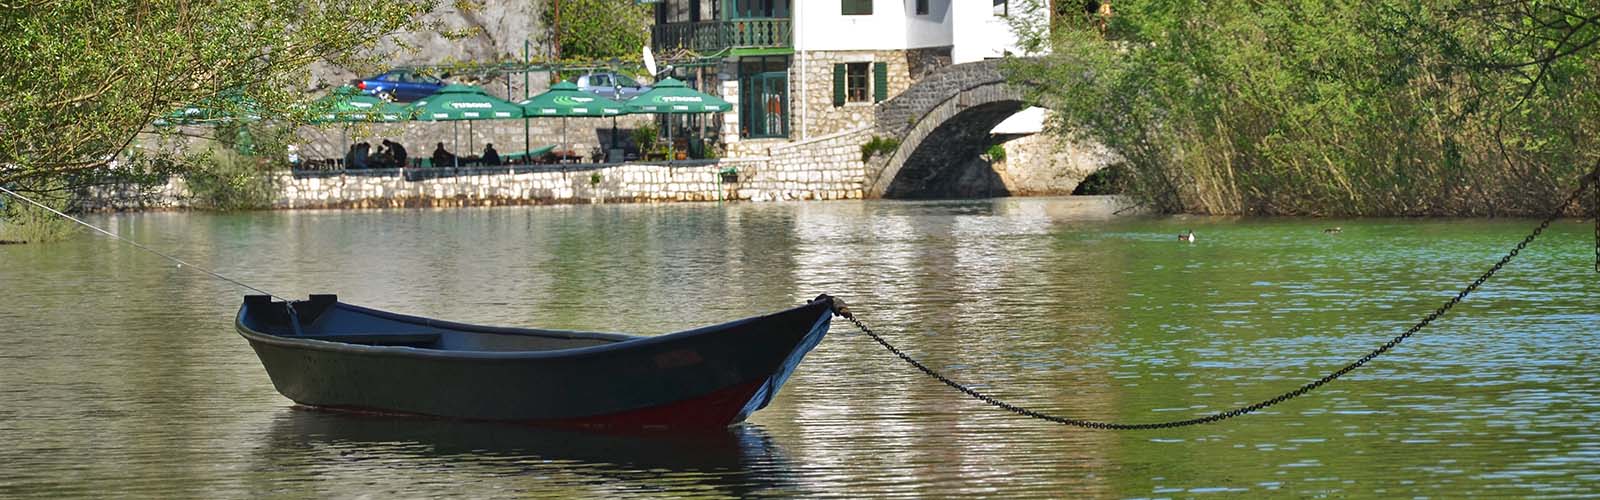 rijeka crnojevica skadarsko jezero aktivni turizam